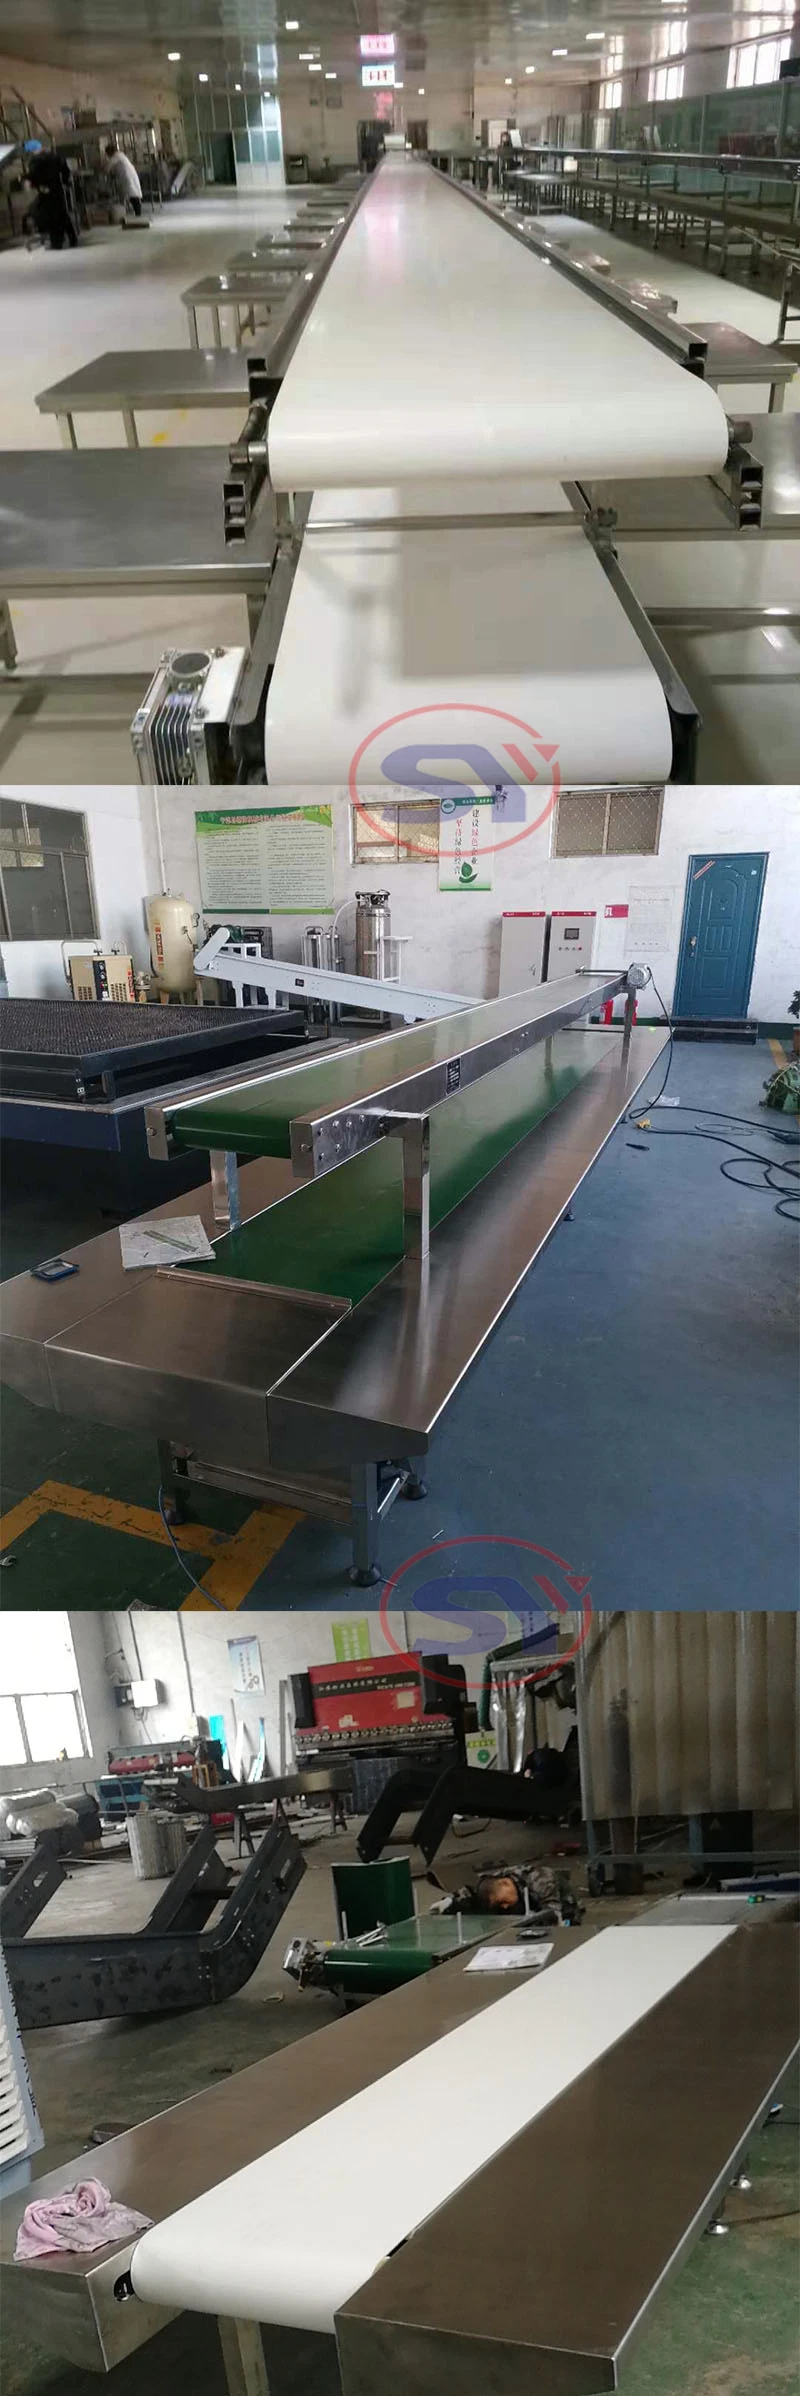 Material Handling Conveyor PVC/PU/Stainless Steel Belt Conveyor for Food Processing Industry